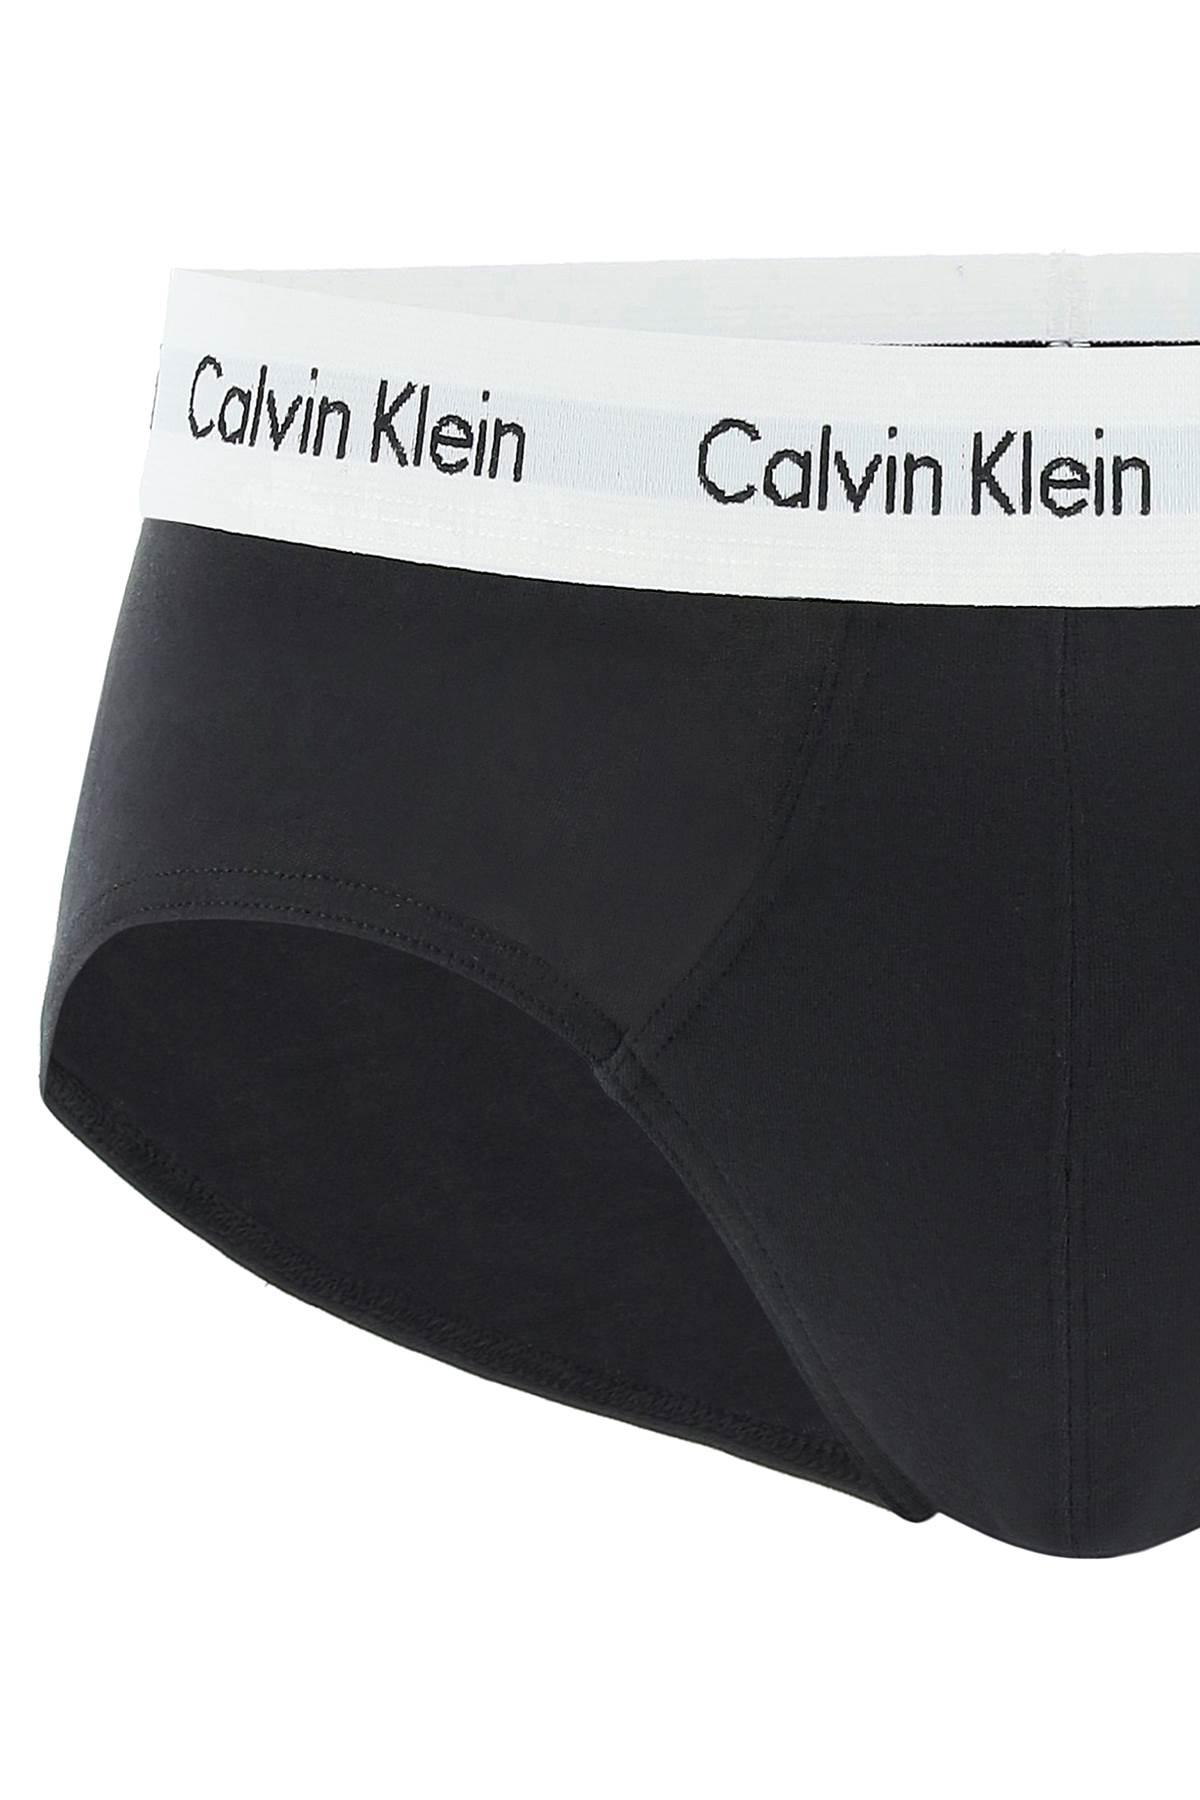 Calvin Klein Cotton Tri-pack Underwear Briefs for Men - Save 61% | Lyst